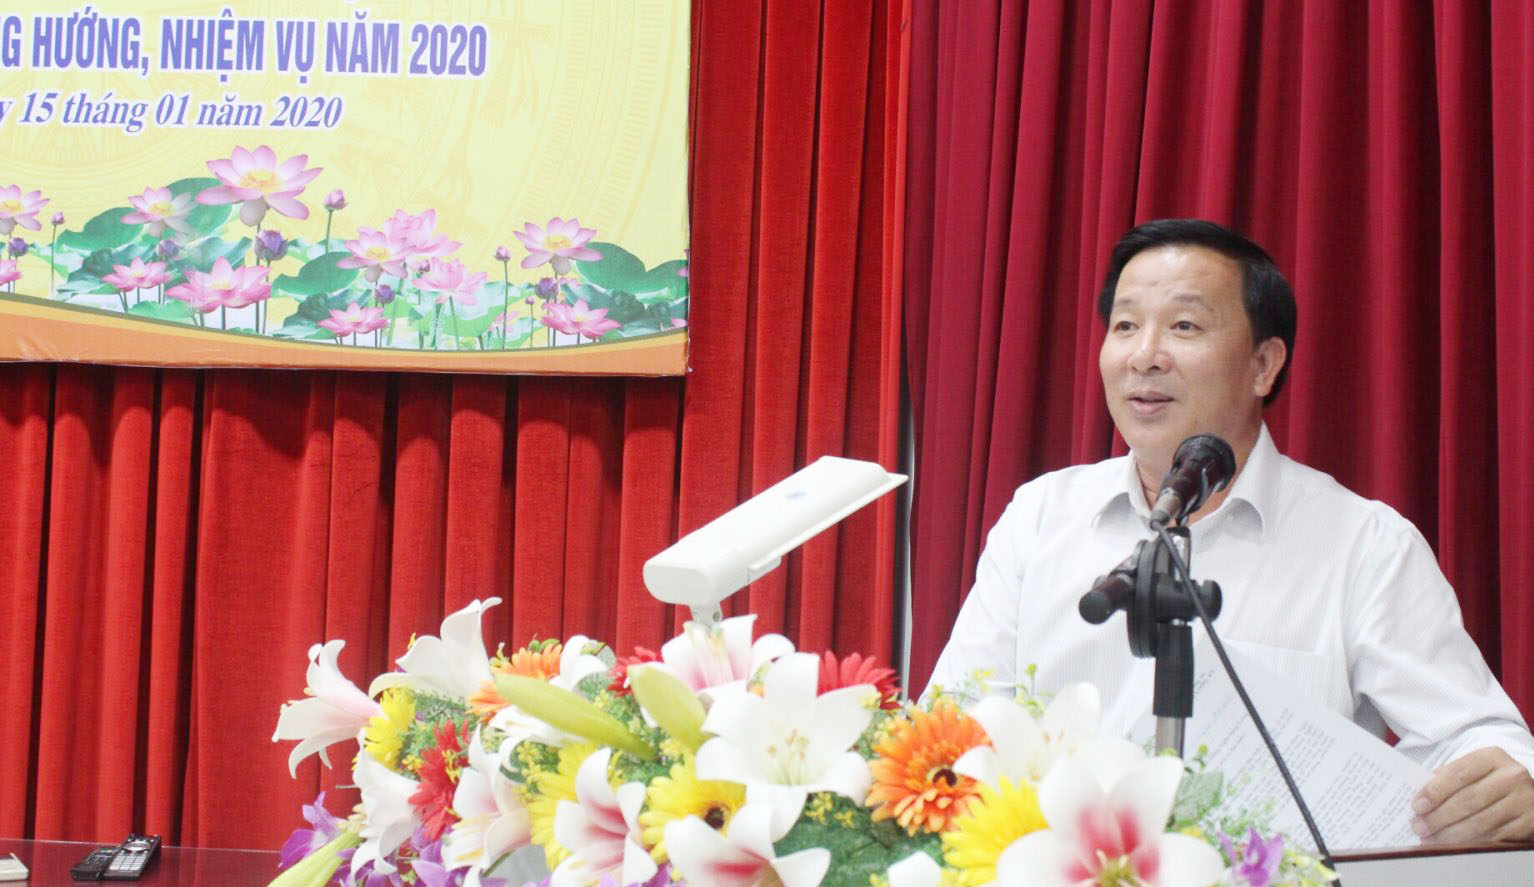 Phó Chủ tịch UBND tỉnh Long An - Nguyễn Văn Út nhấn mạnh, kết quả phát triển kinh tế - xã hội năm 2019 ghi nhận có sự đóng góp của ngành Ngân hàng Long An 